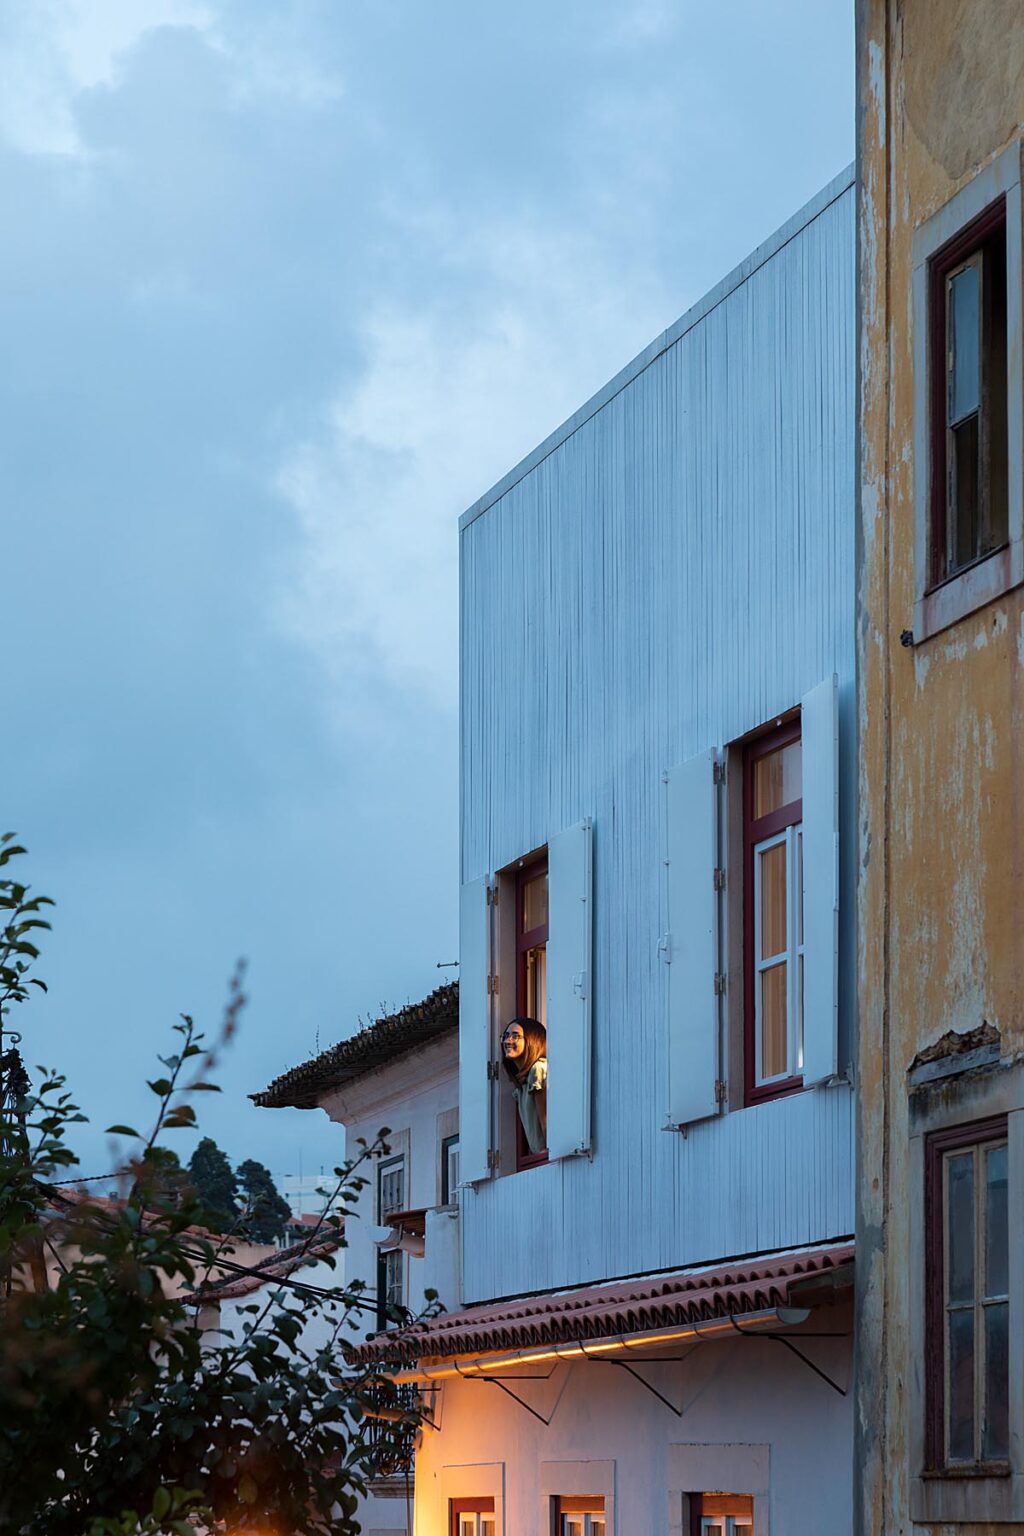 Harmonie architecturale et valorisation de la vie de famille à Leiria. Maison Matias Alves. Studio Joana Marcelino